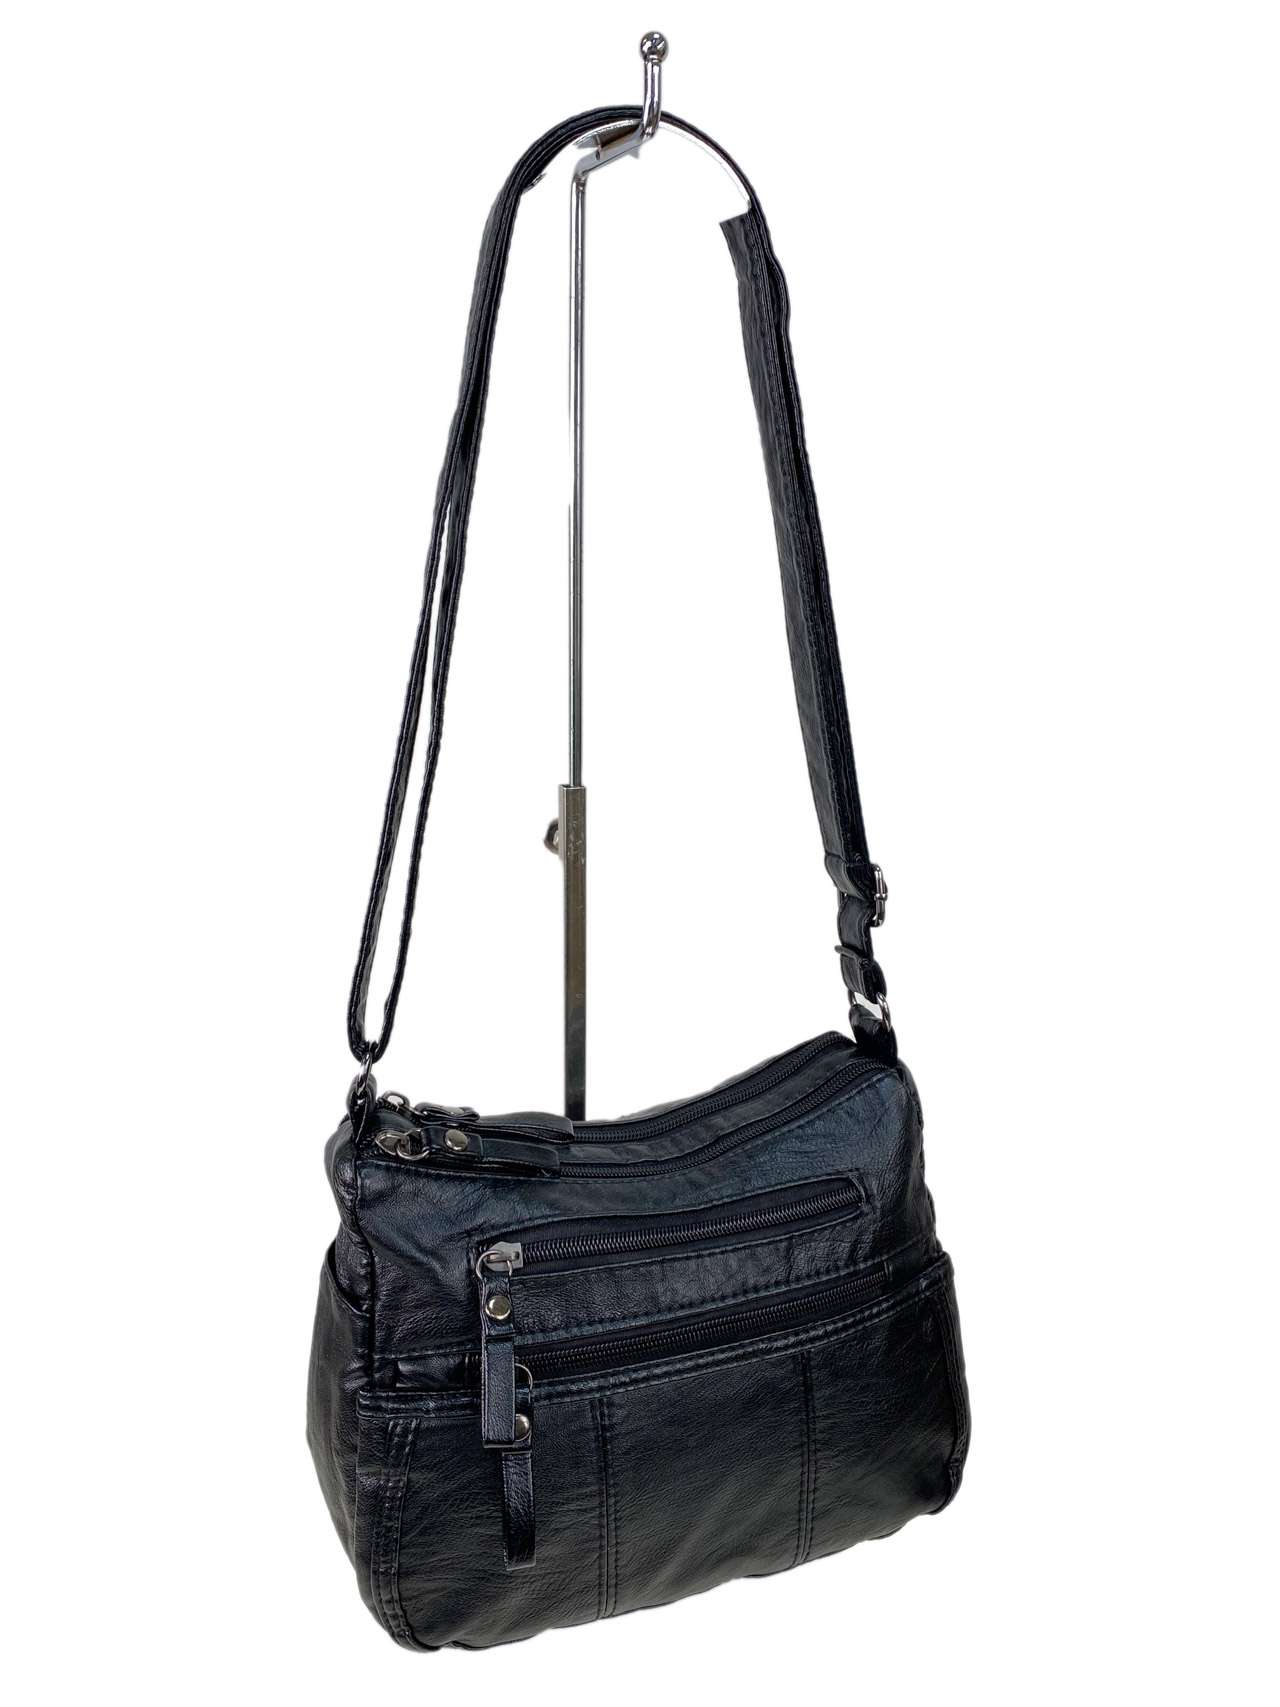 Женская классическая сумка из искусственной кожи, цвет черный